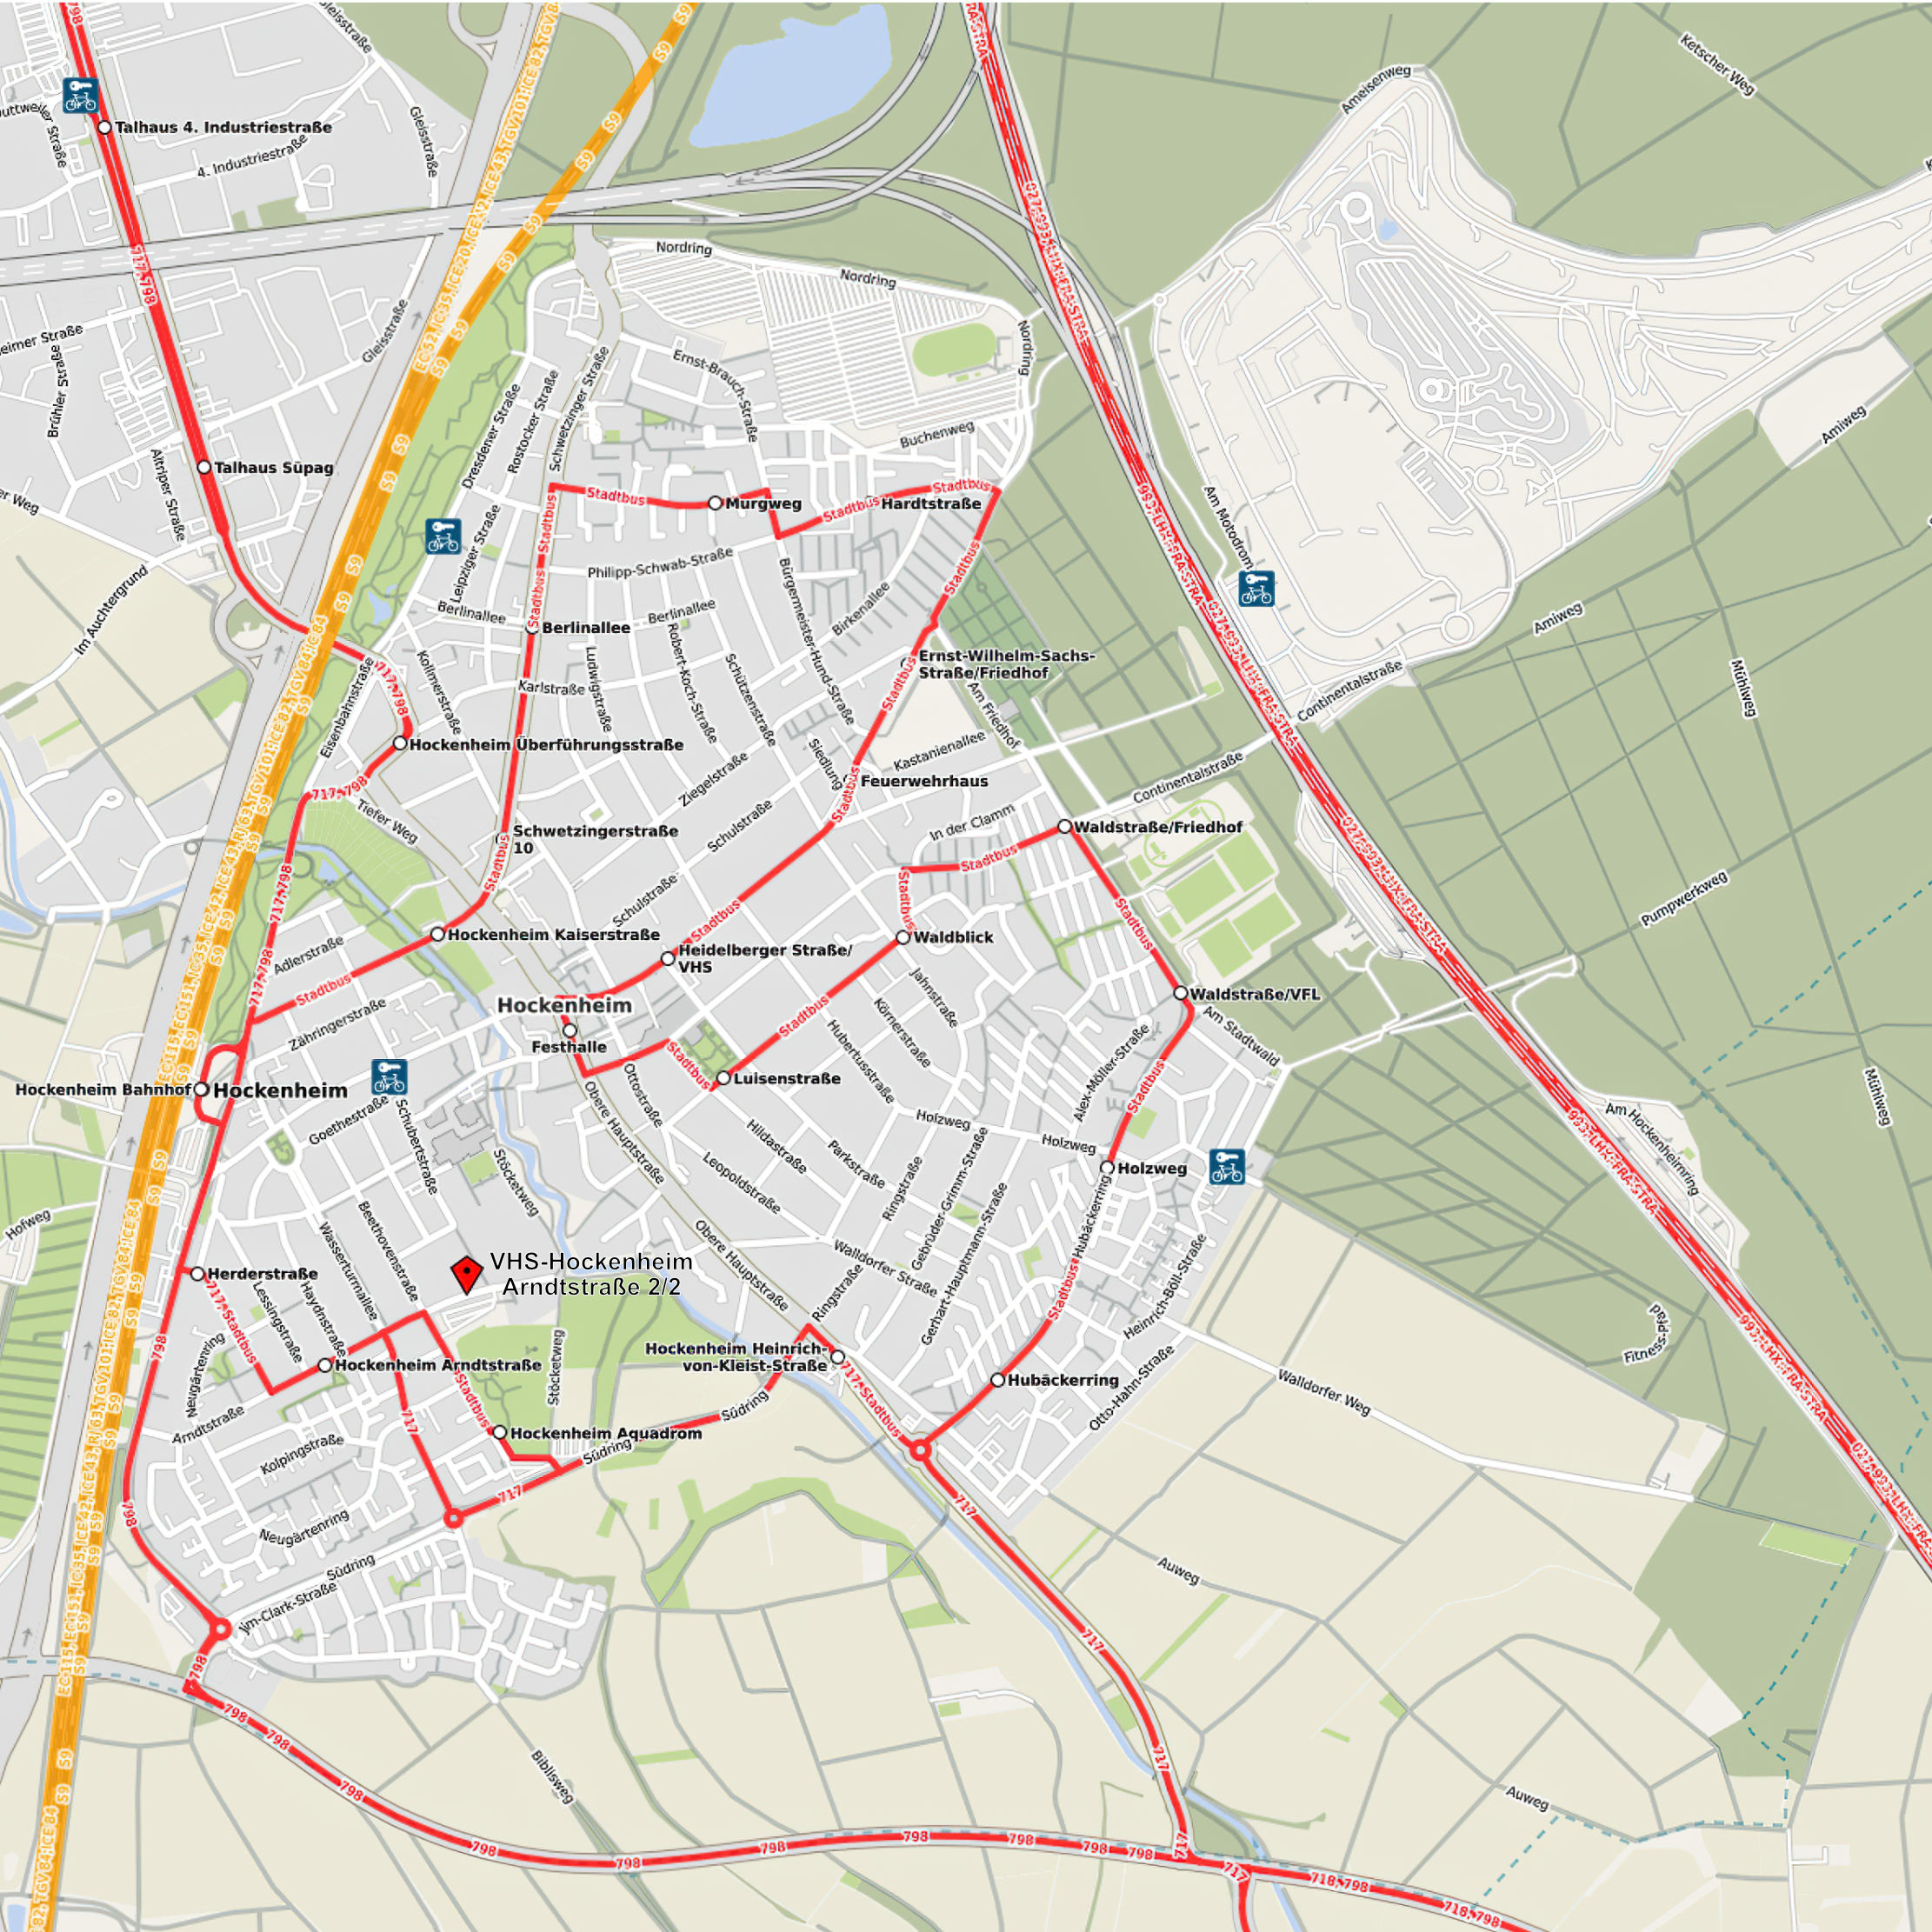 Karte des Stadtgebiets von Hockenheim mit ÖPNV Linien